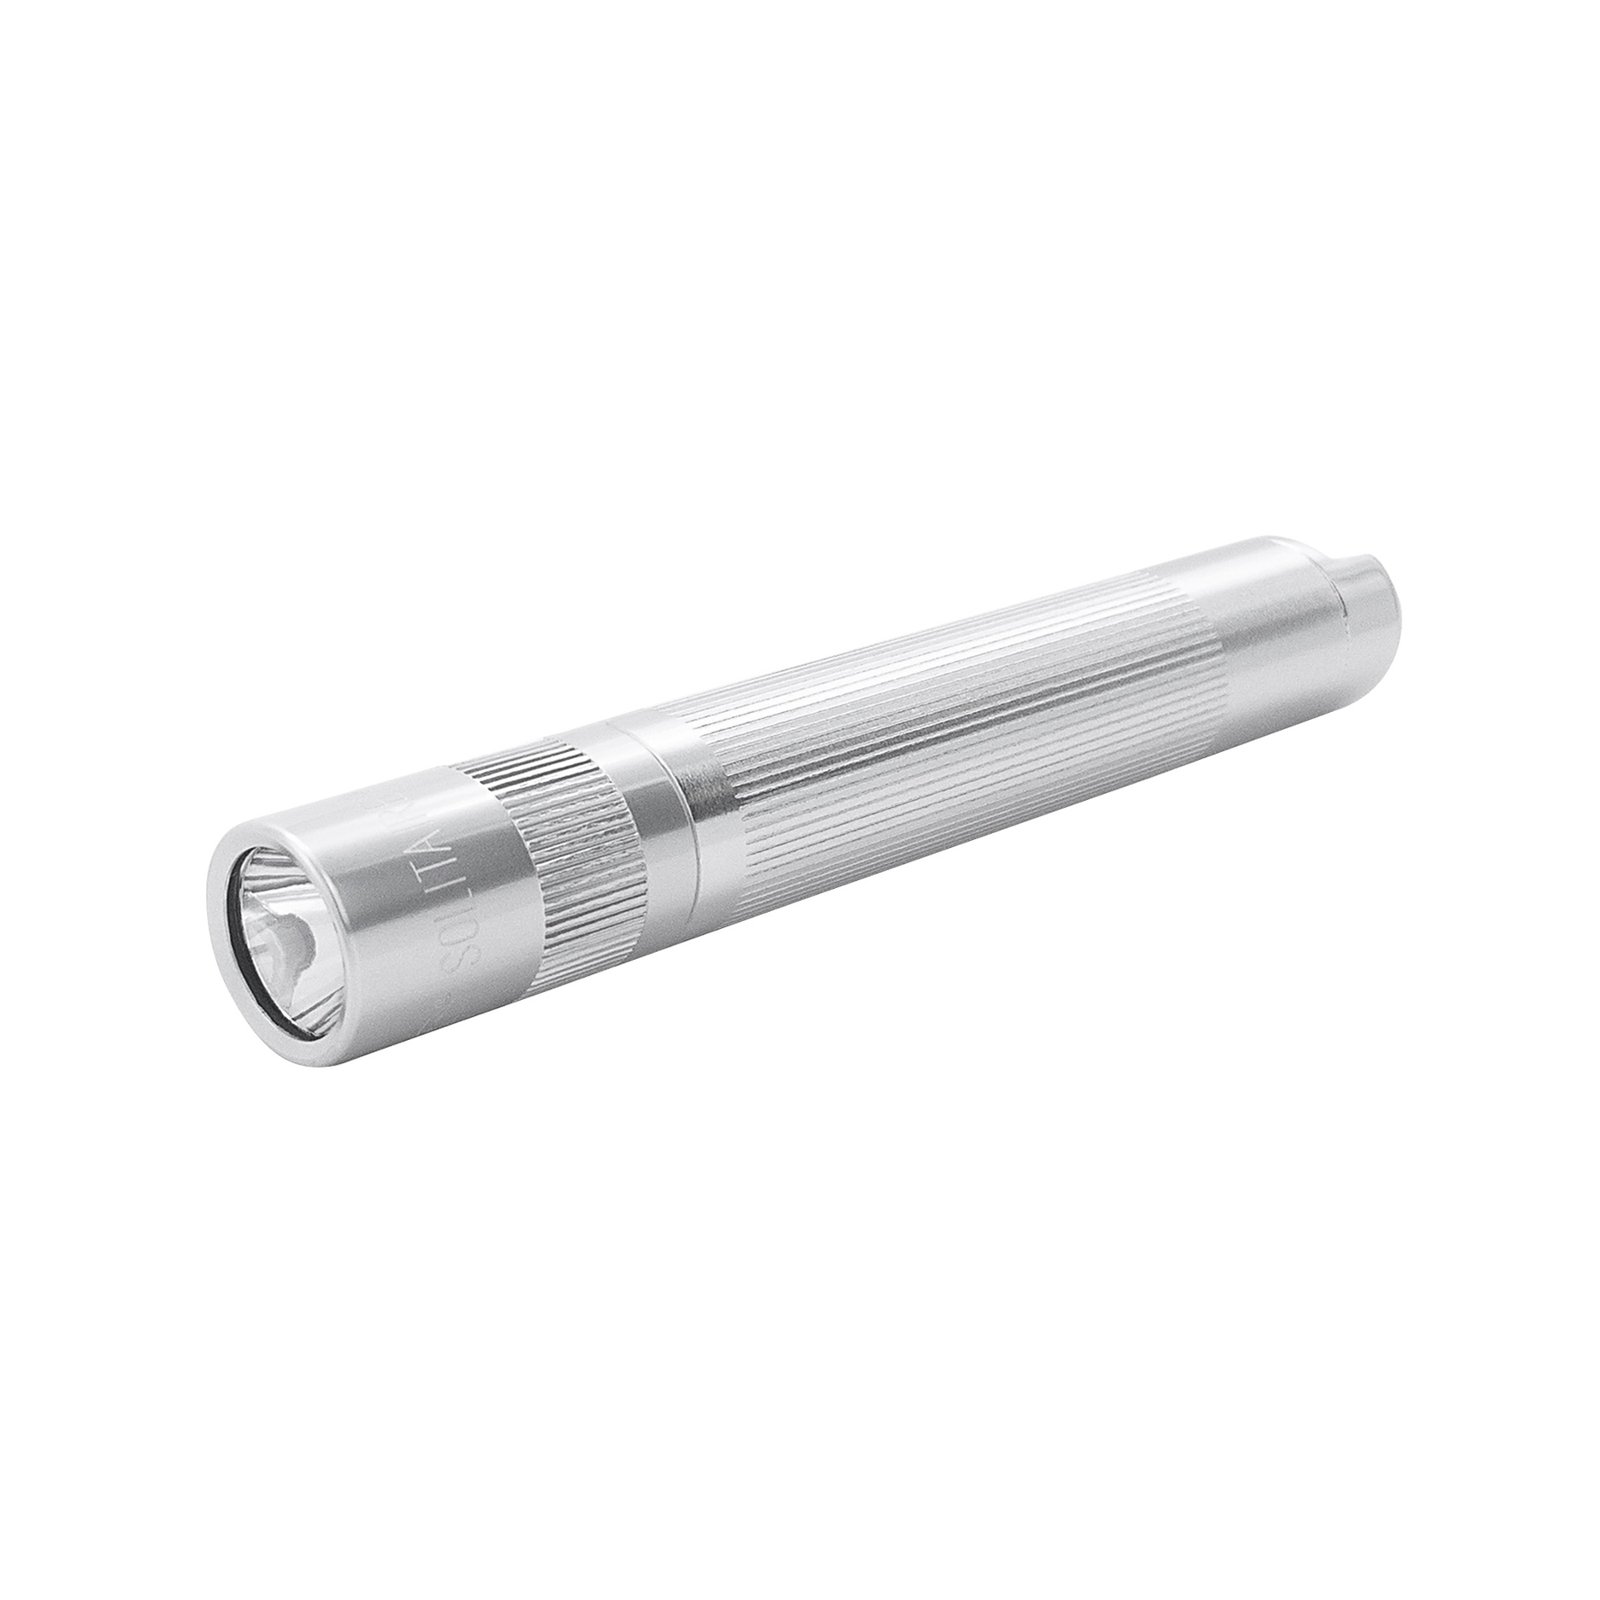 Svítilna Maglite LED Solitaire, 1 článek AAA, krabička, stříbrná